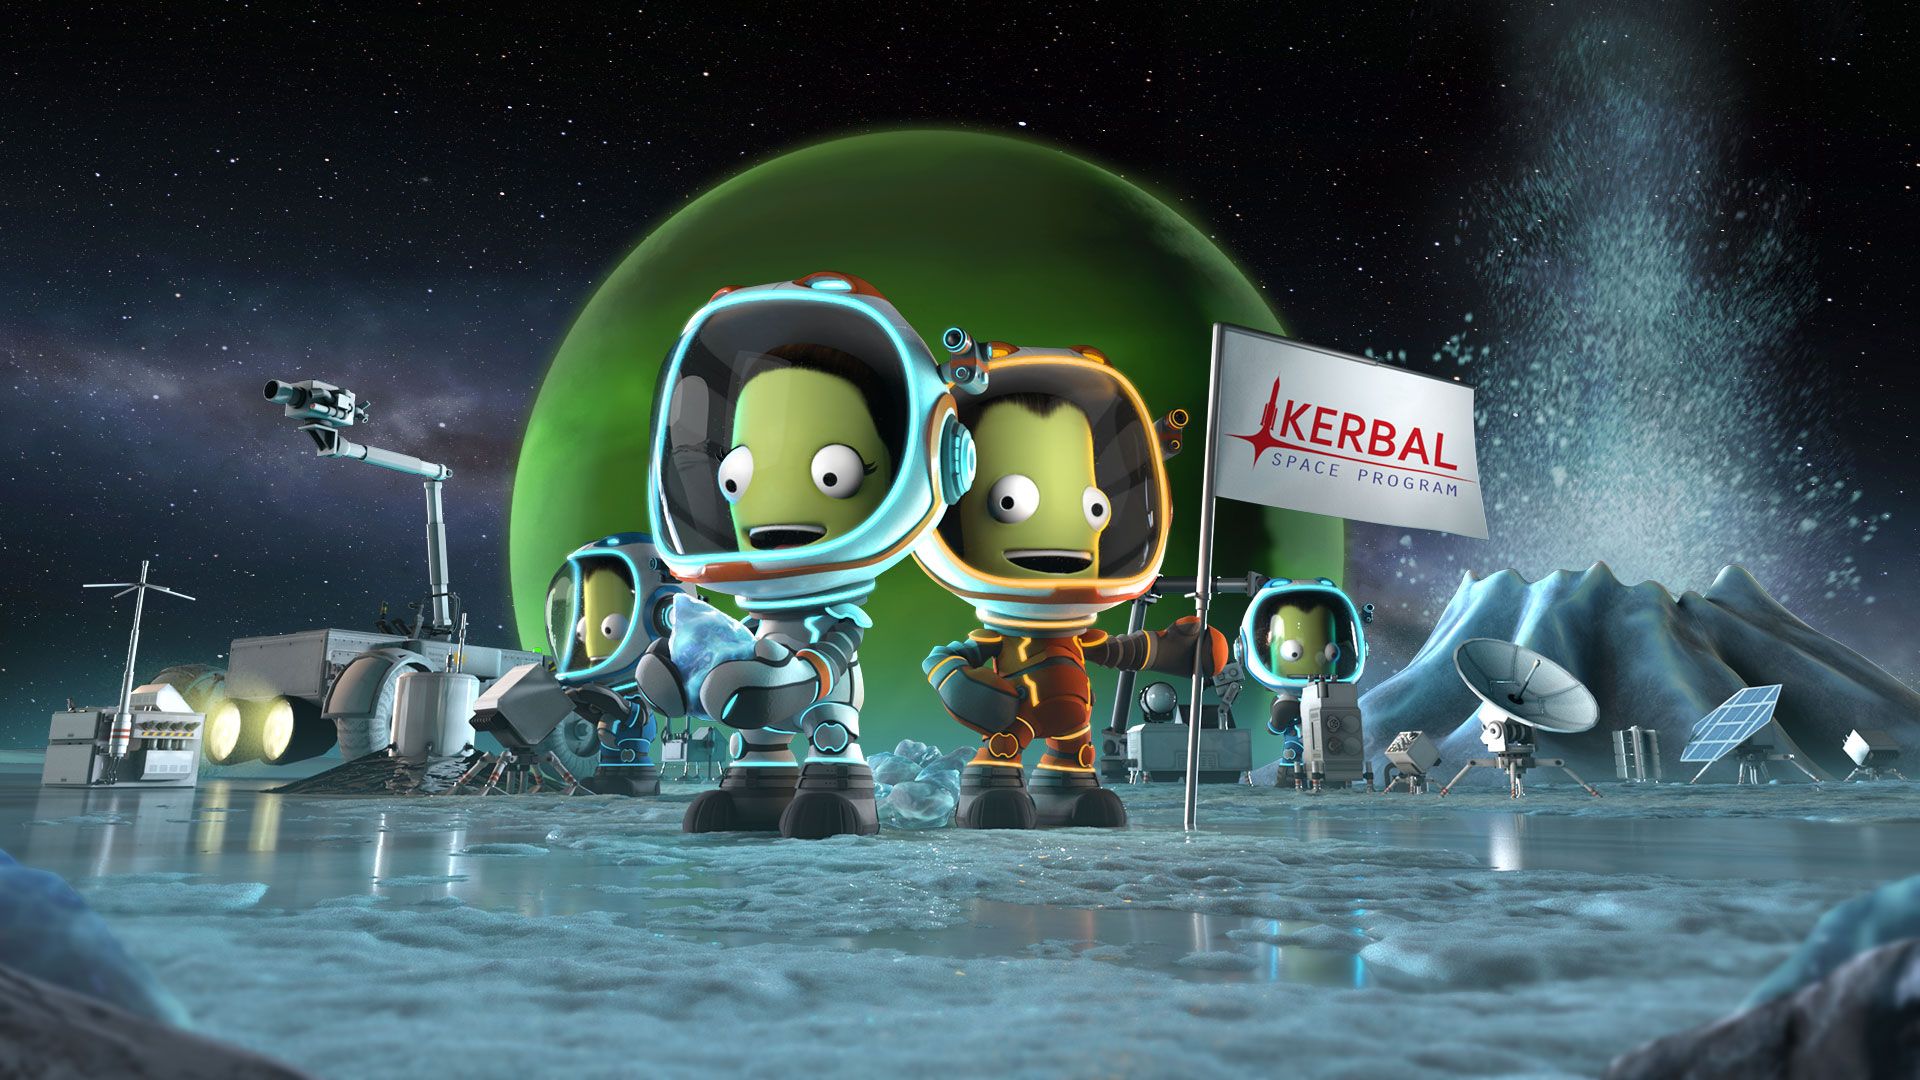 Kerbal Space Program best educational video games